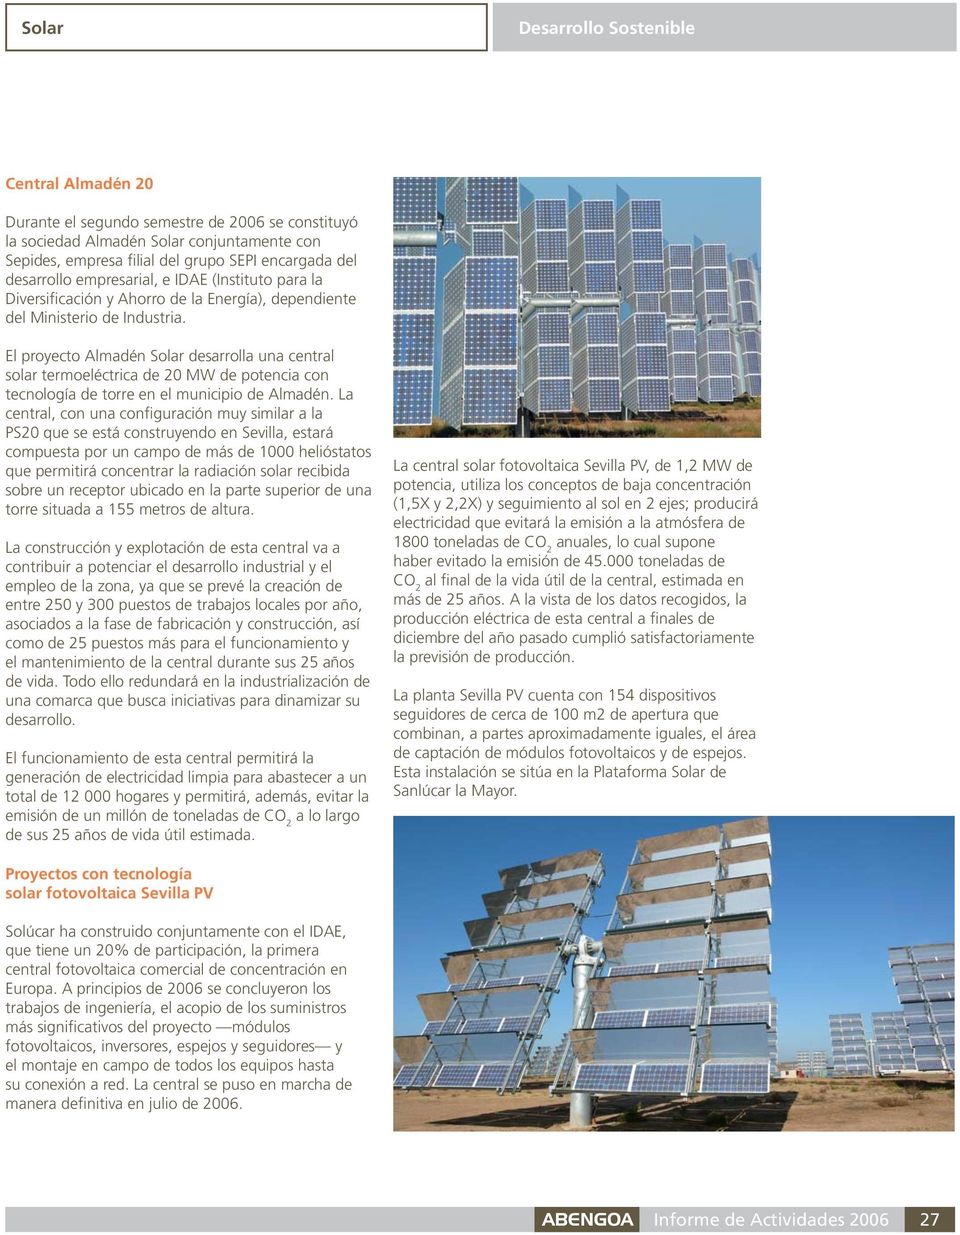 El proyecto Almadén Solar desarrolla una central solar termoeléctrica de 20 MW de potencia con tecnología de torre en el municipio de Almadén.